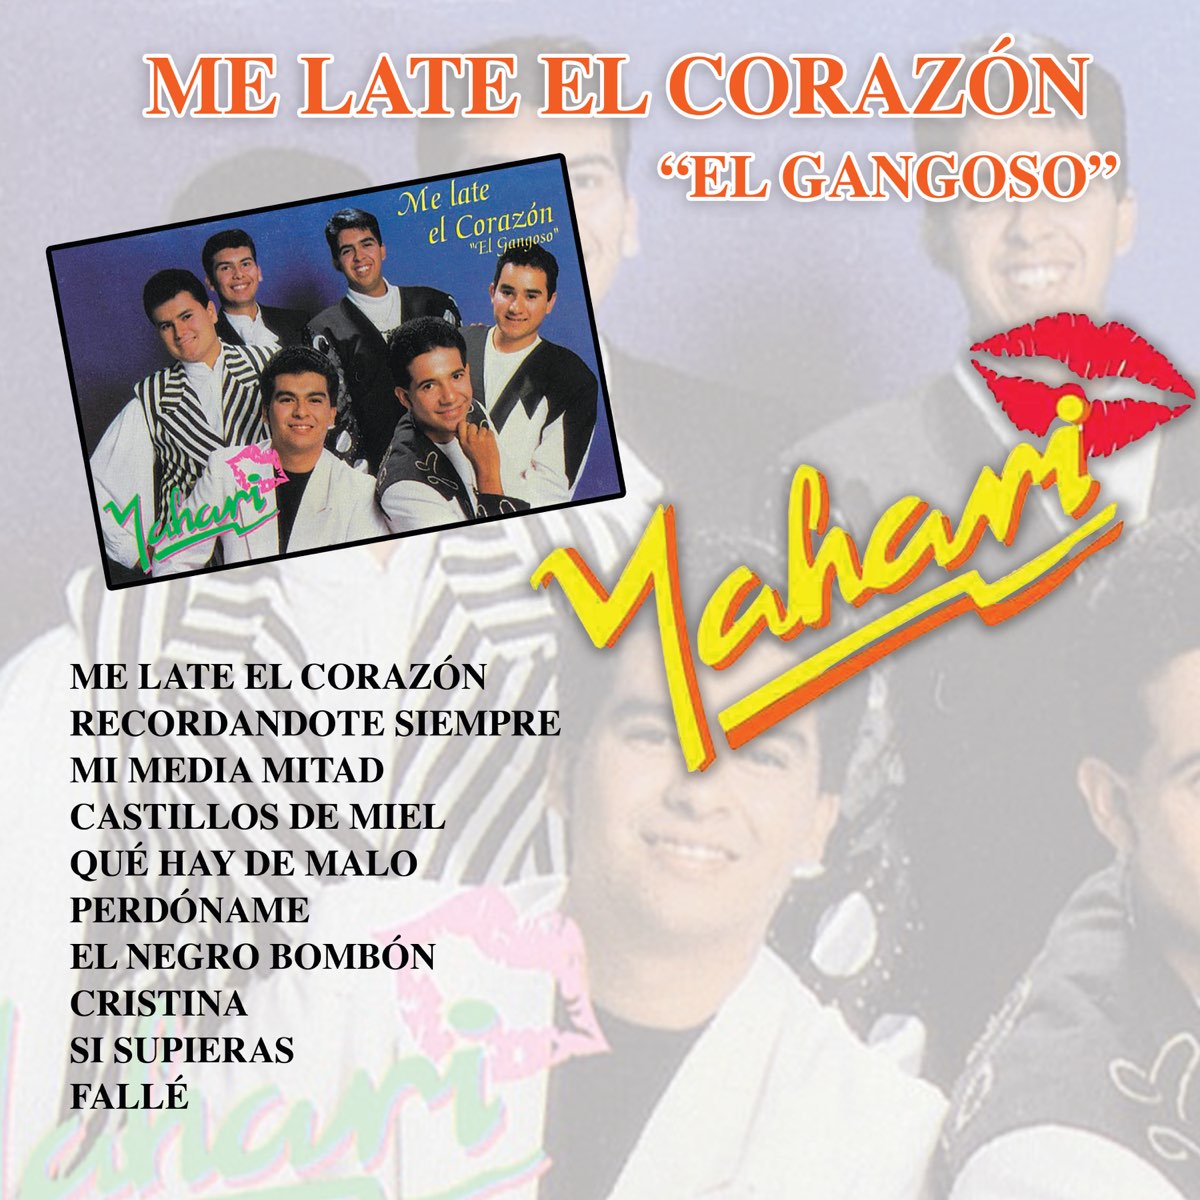 Me Late El Corazón "El Gangoso" by Yahari on Apple Music